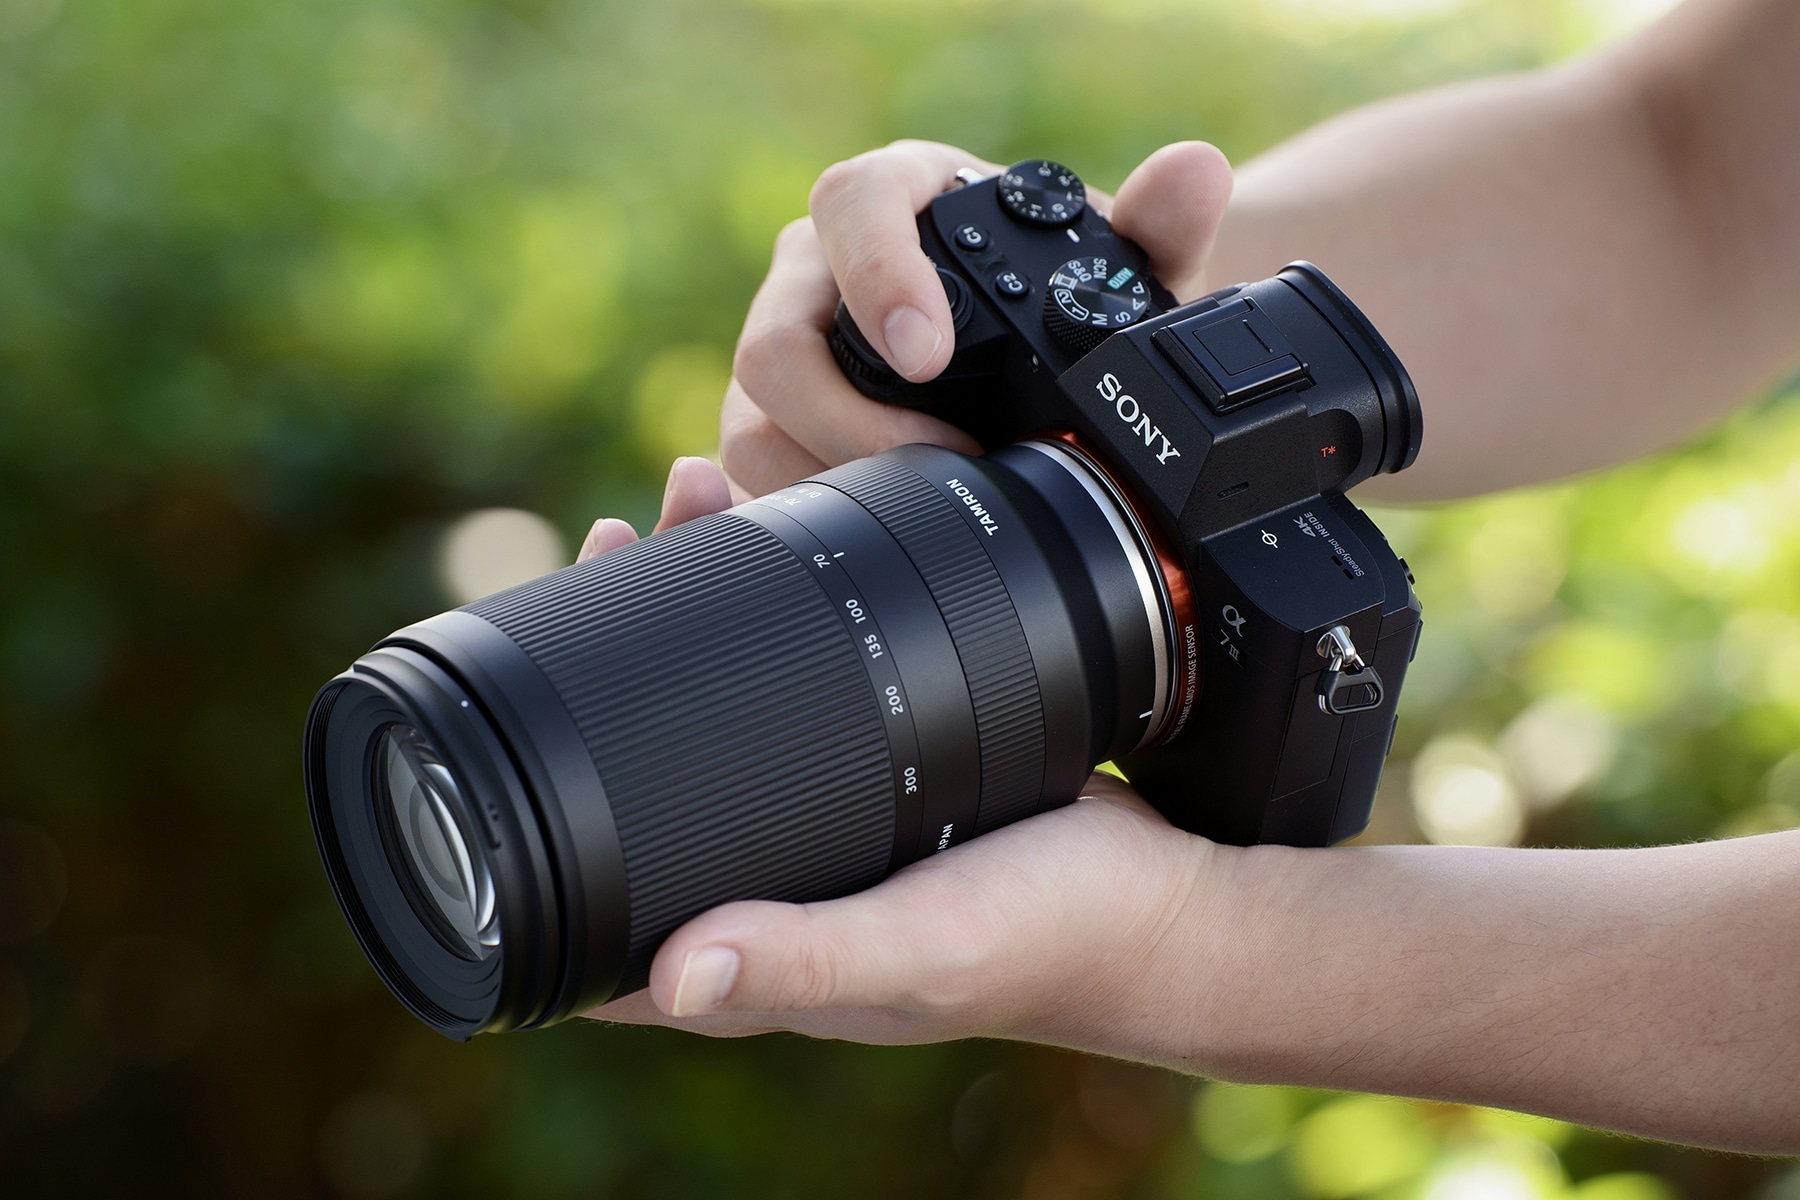 Tamron ra mắt ống kính tiêu cự 70-300mm F4.5-6.3 nhỏ gọn ngàm Sony E, giá chỉ 549 USD